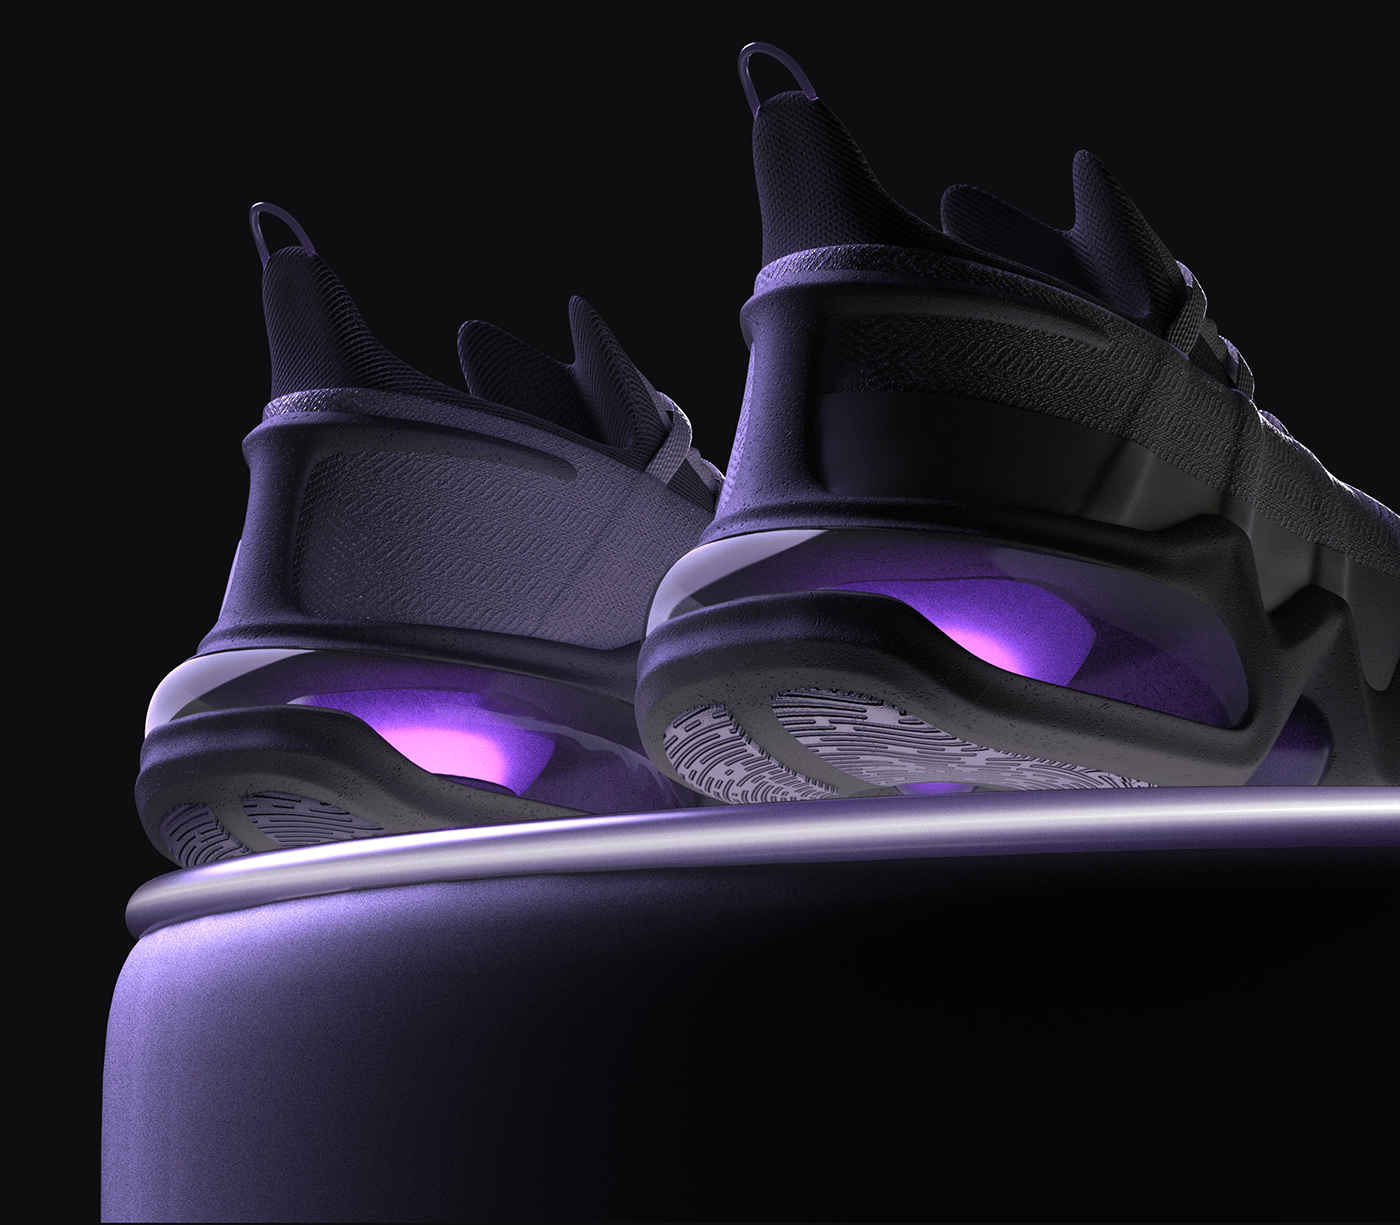 3d art footwear design Future technology industrial design  innovation product design  rendering shoe design Technology VR modeling